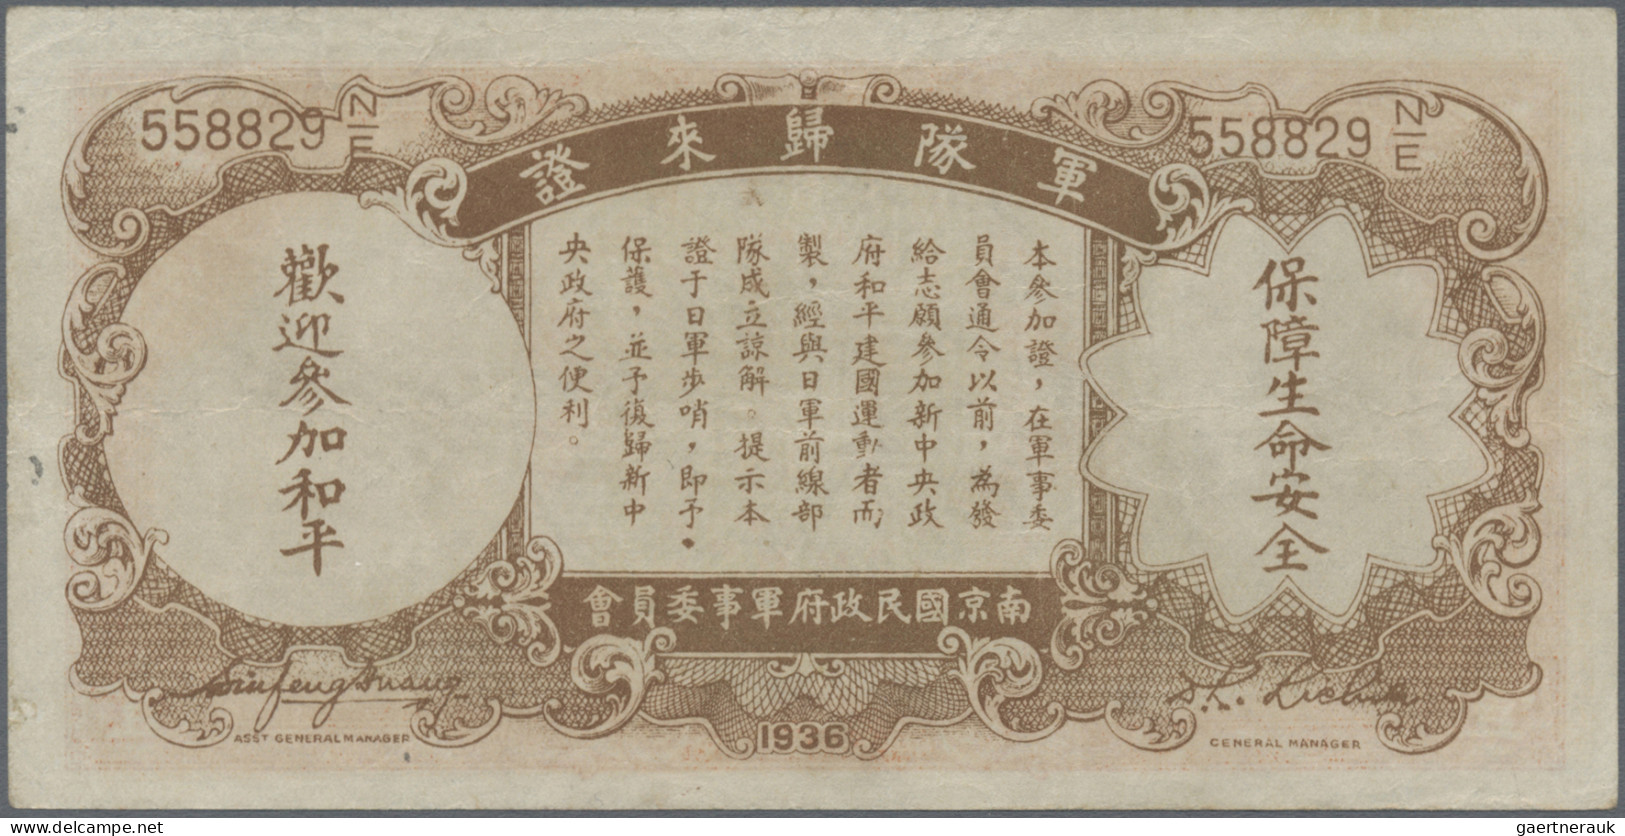 China: Central Bank Of China – Pass For Nanking Military Government, 1 Yuan 1936 - China